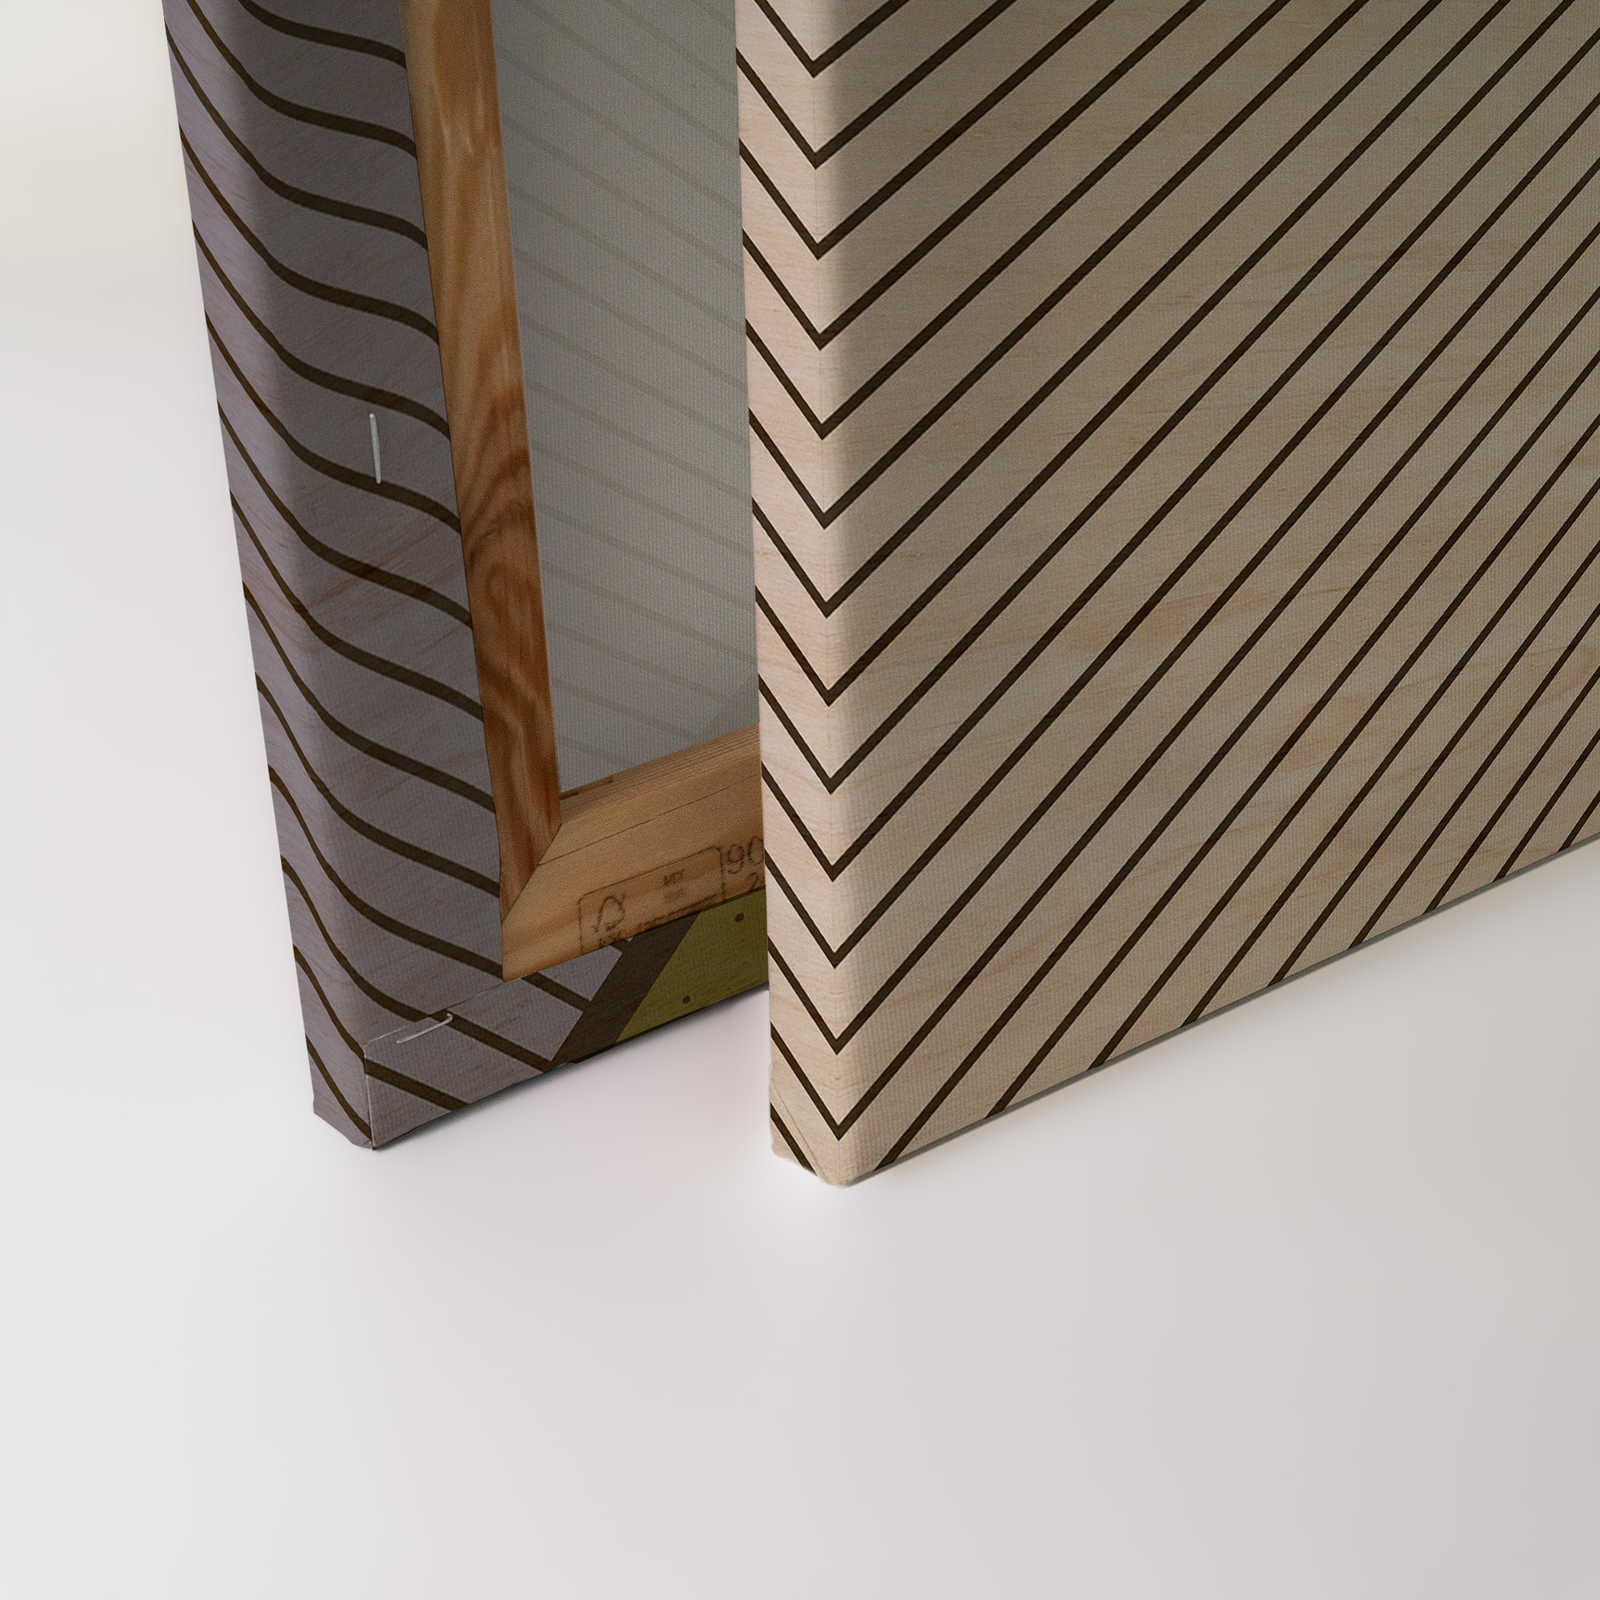             Bird gang 2 - Leinwandbild, modernes Muster im Pop Art Stil- Sperrholz Struktur – 0,90 m x 0,60 m
        